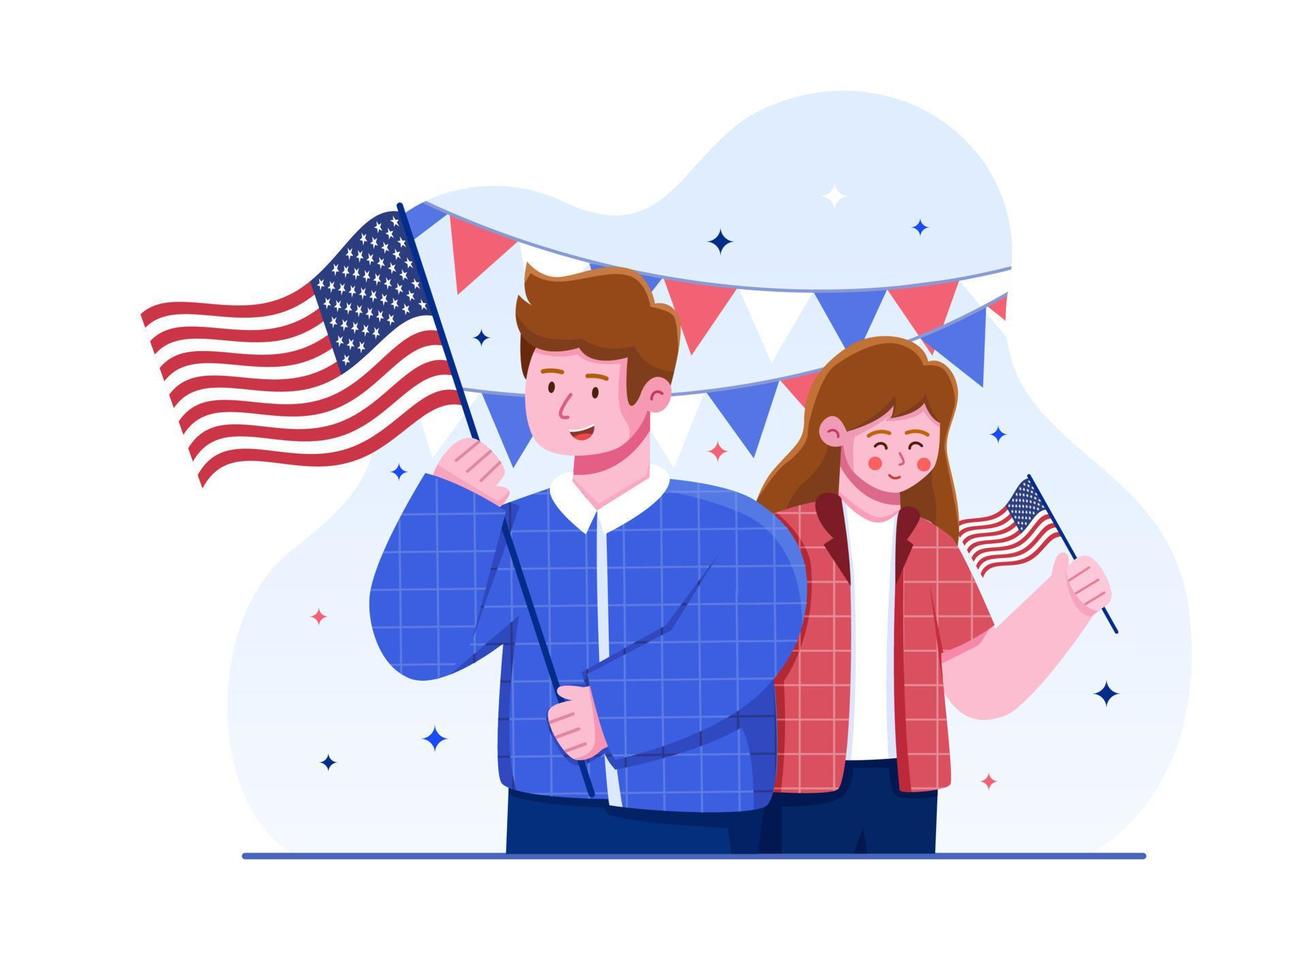 persone felici insieme che celebrano il giorno dell'indipendenza degli Stati Uniti con persone che tengono la bandiera nazionale americana. può essere utilizzato per biglietti di auguri, cartoline, banner, poster, stampa, web, social media, ecc. vettore